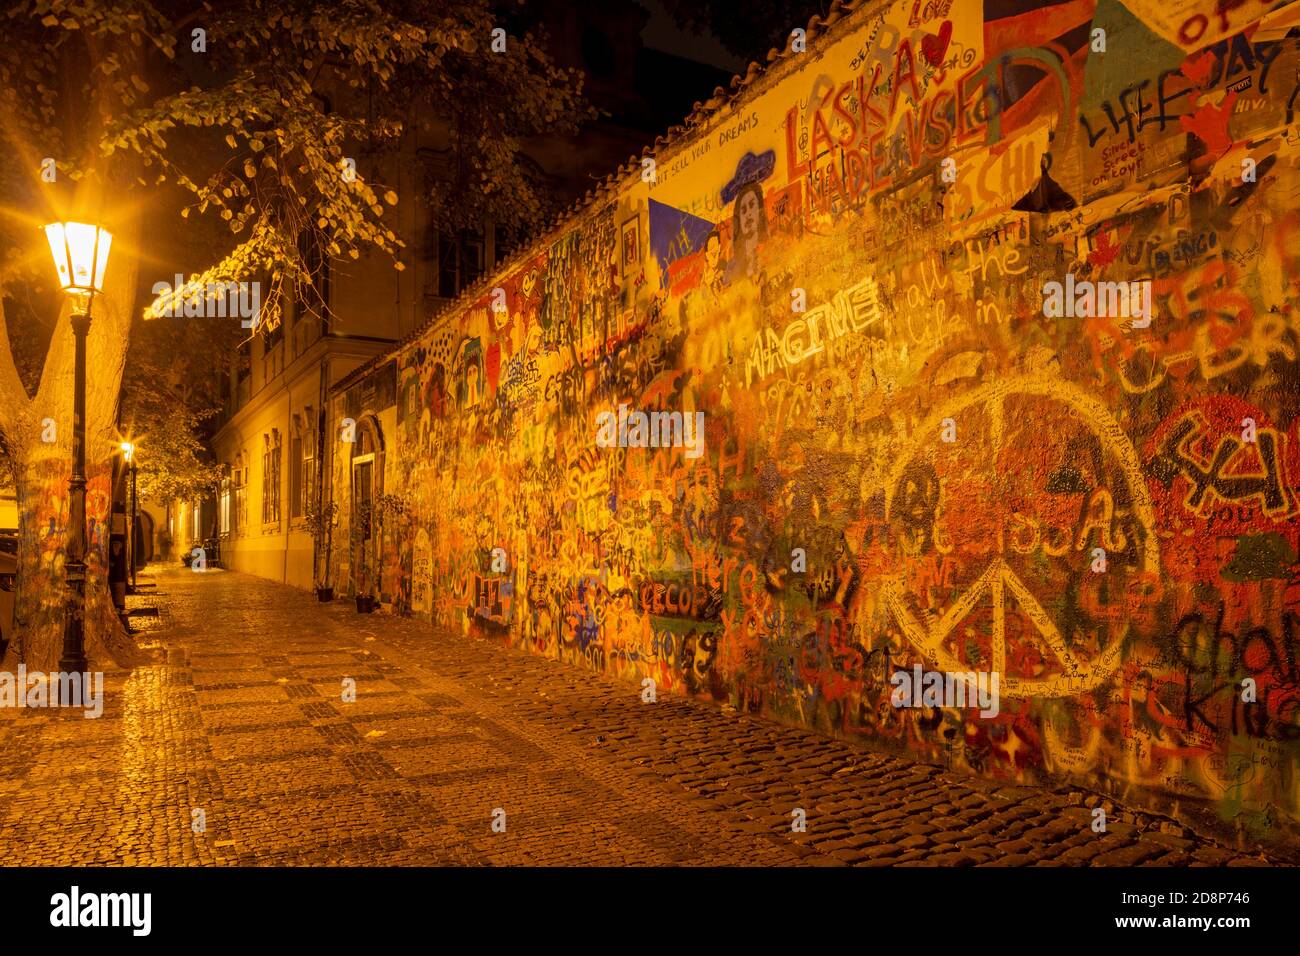 PRAGA, REPUBBLICA CECA - 17 OTTOBRE 2018: Il muro di pace notturno di John Lennon creato nel 1980. Foto Stock